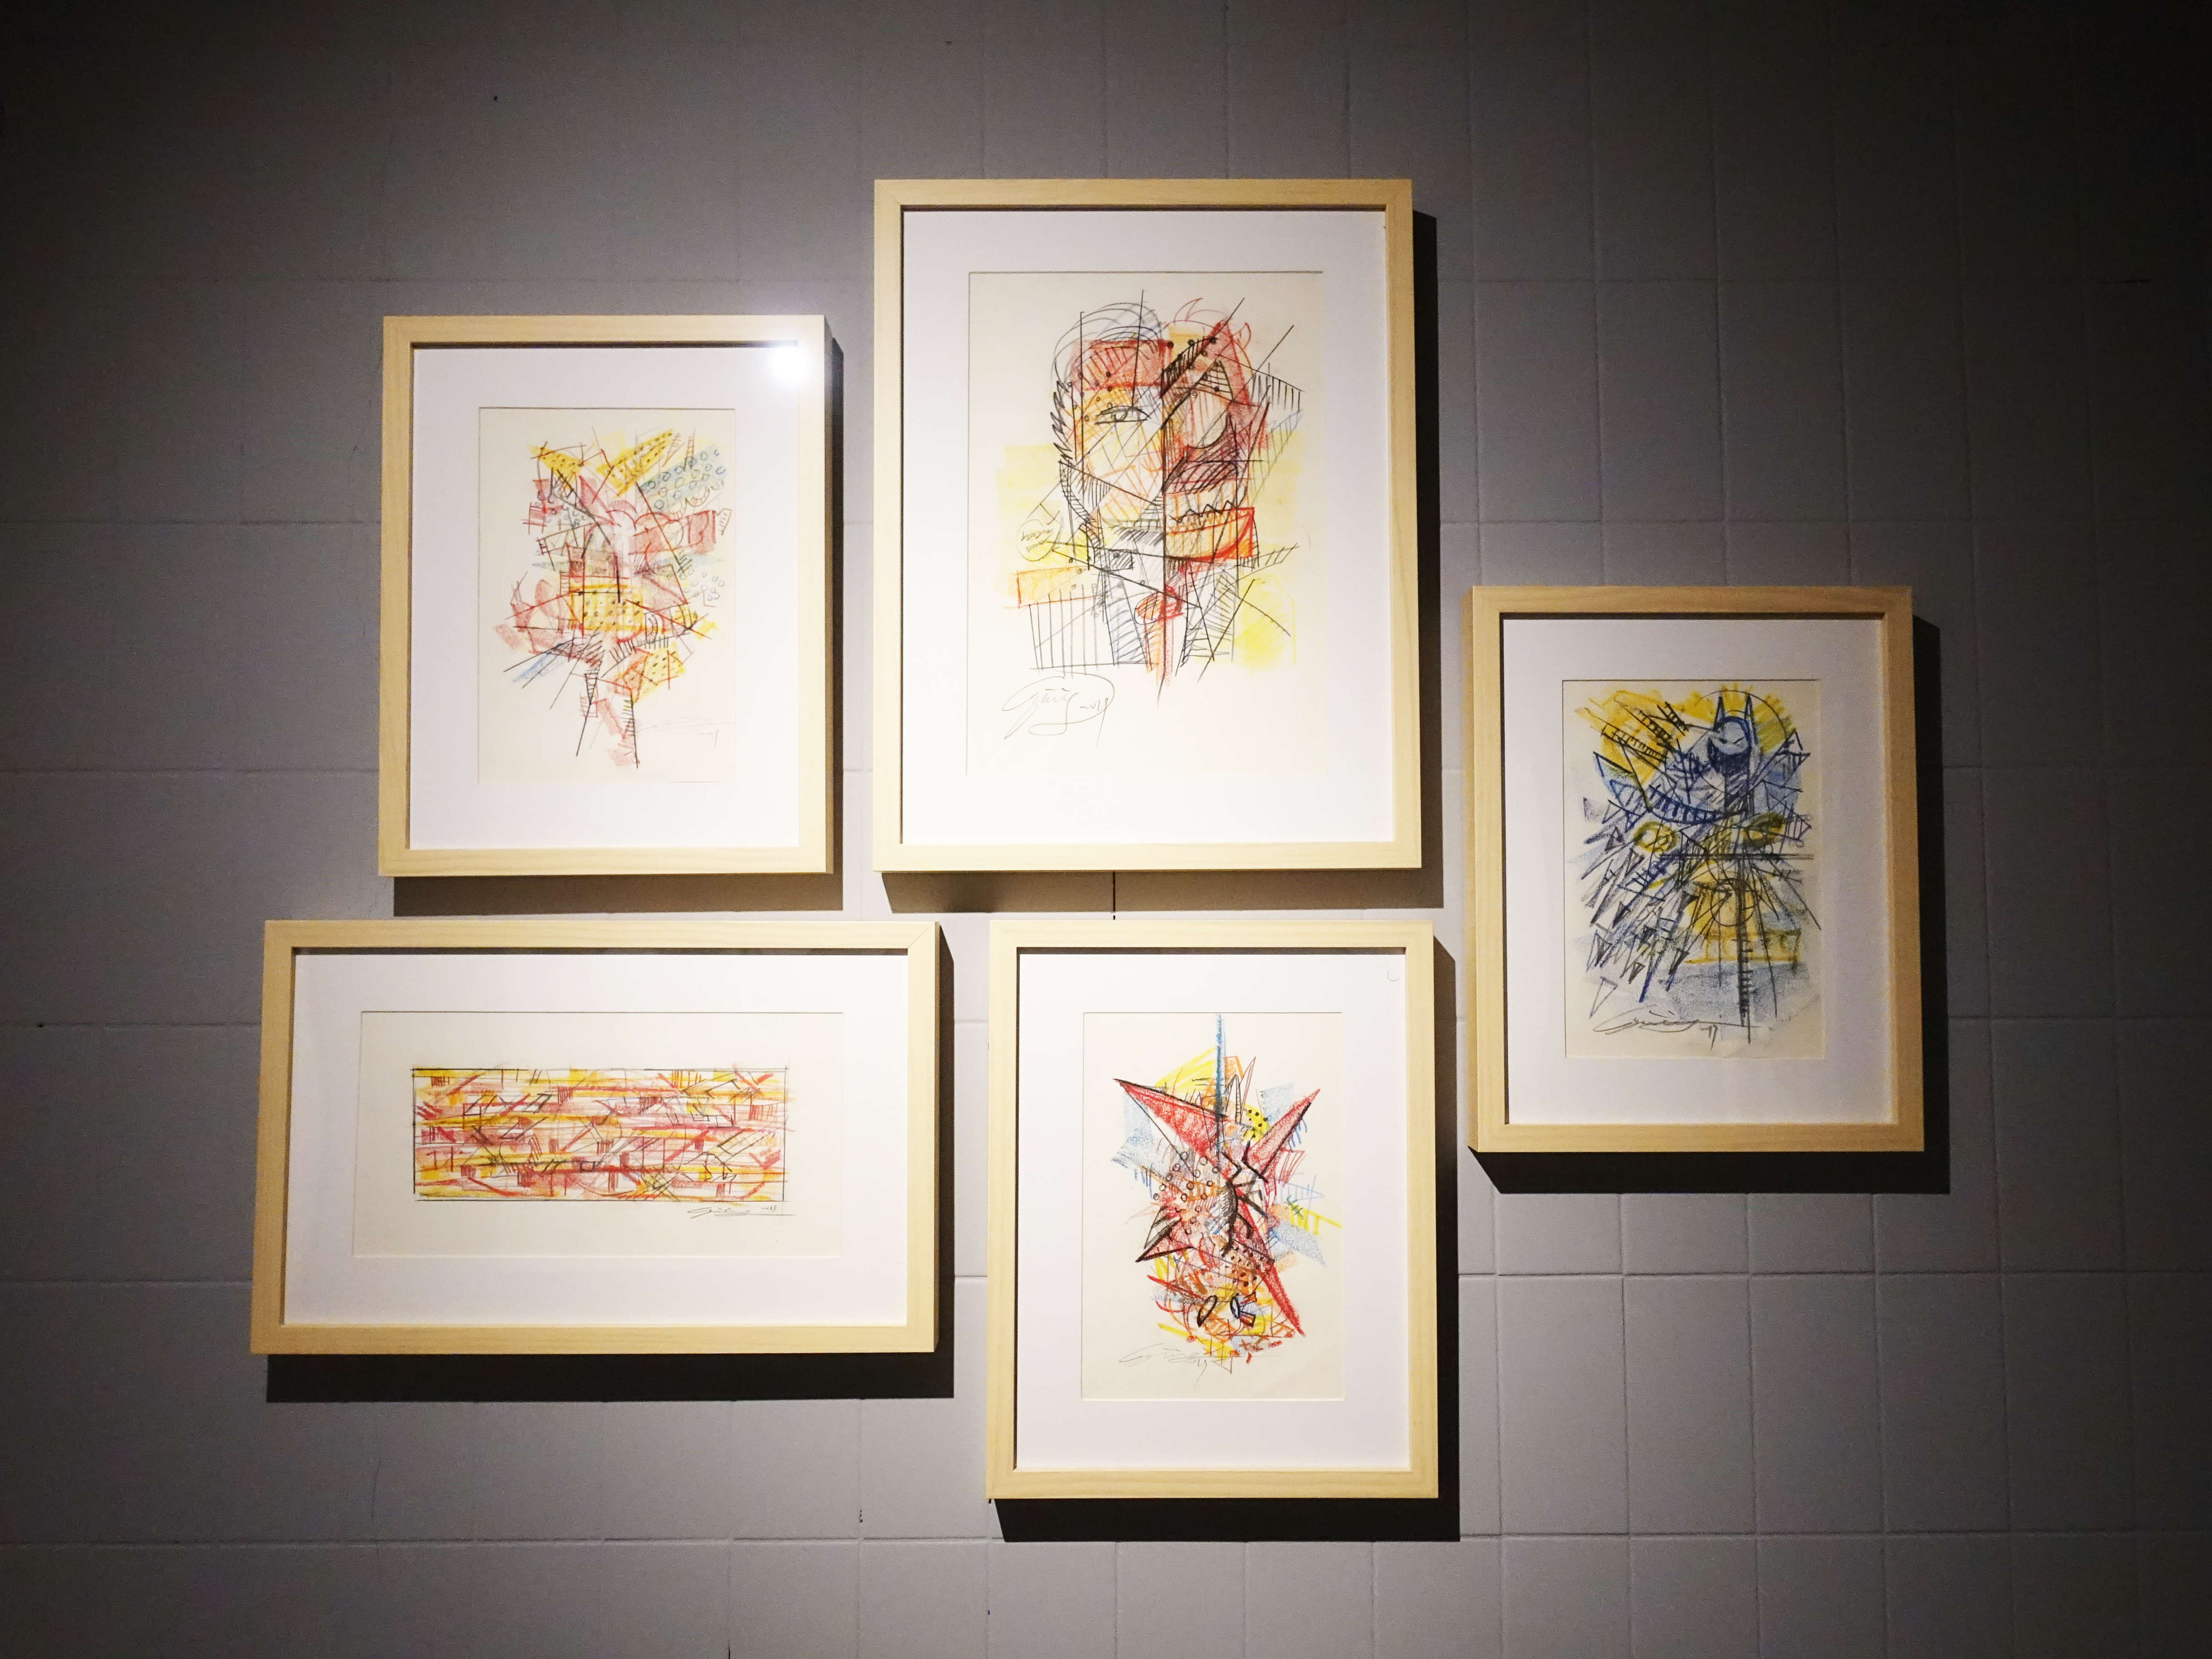 雷相畫廊展出藝術家林俊良草稿系列作品。